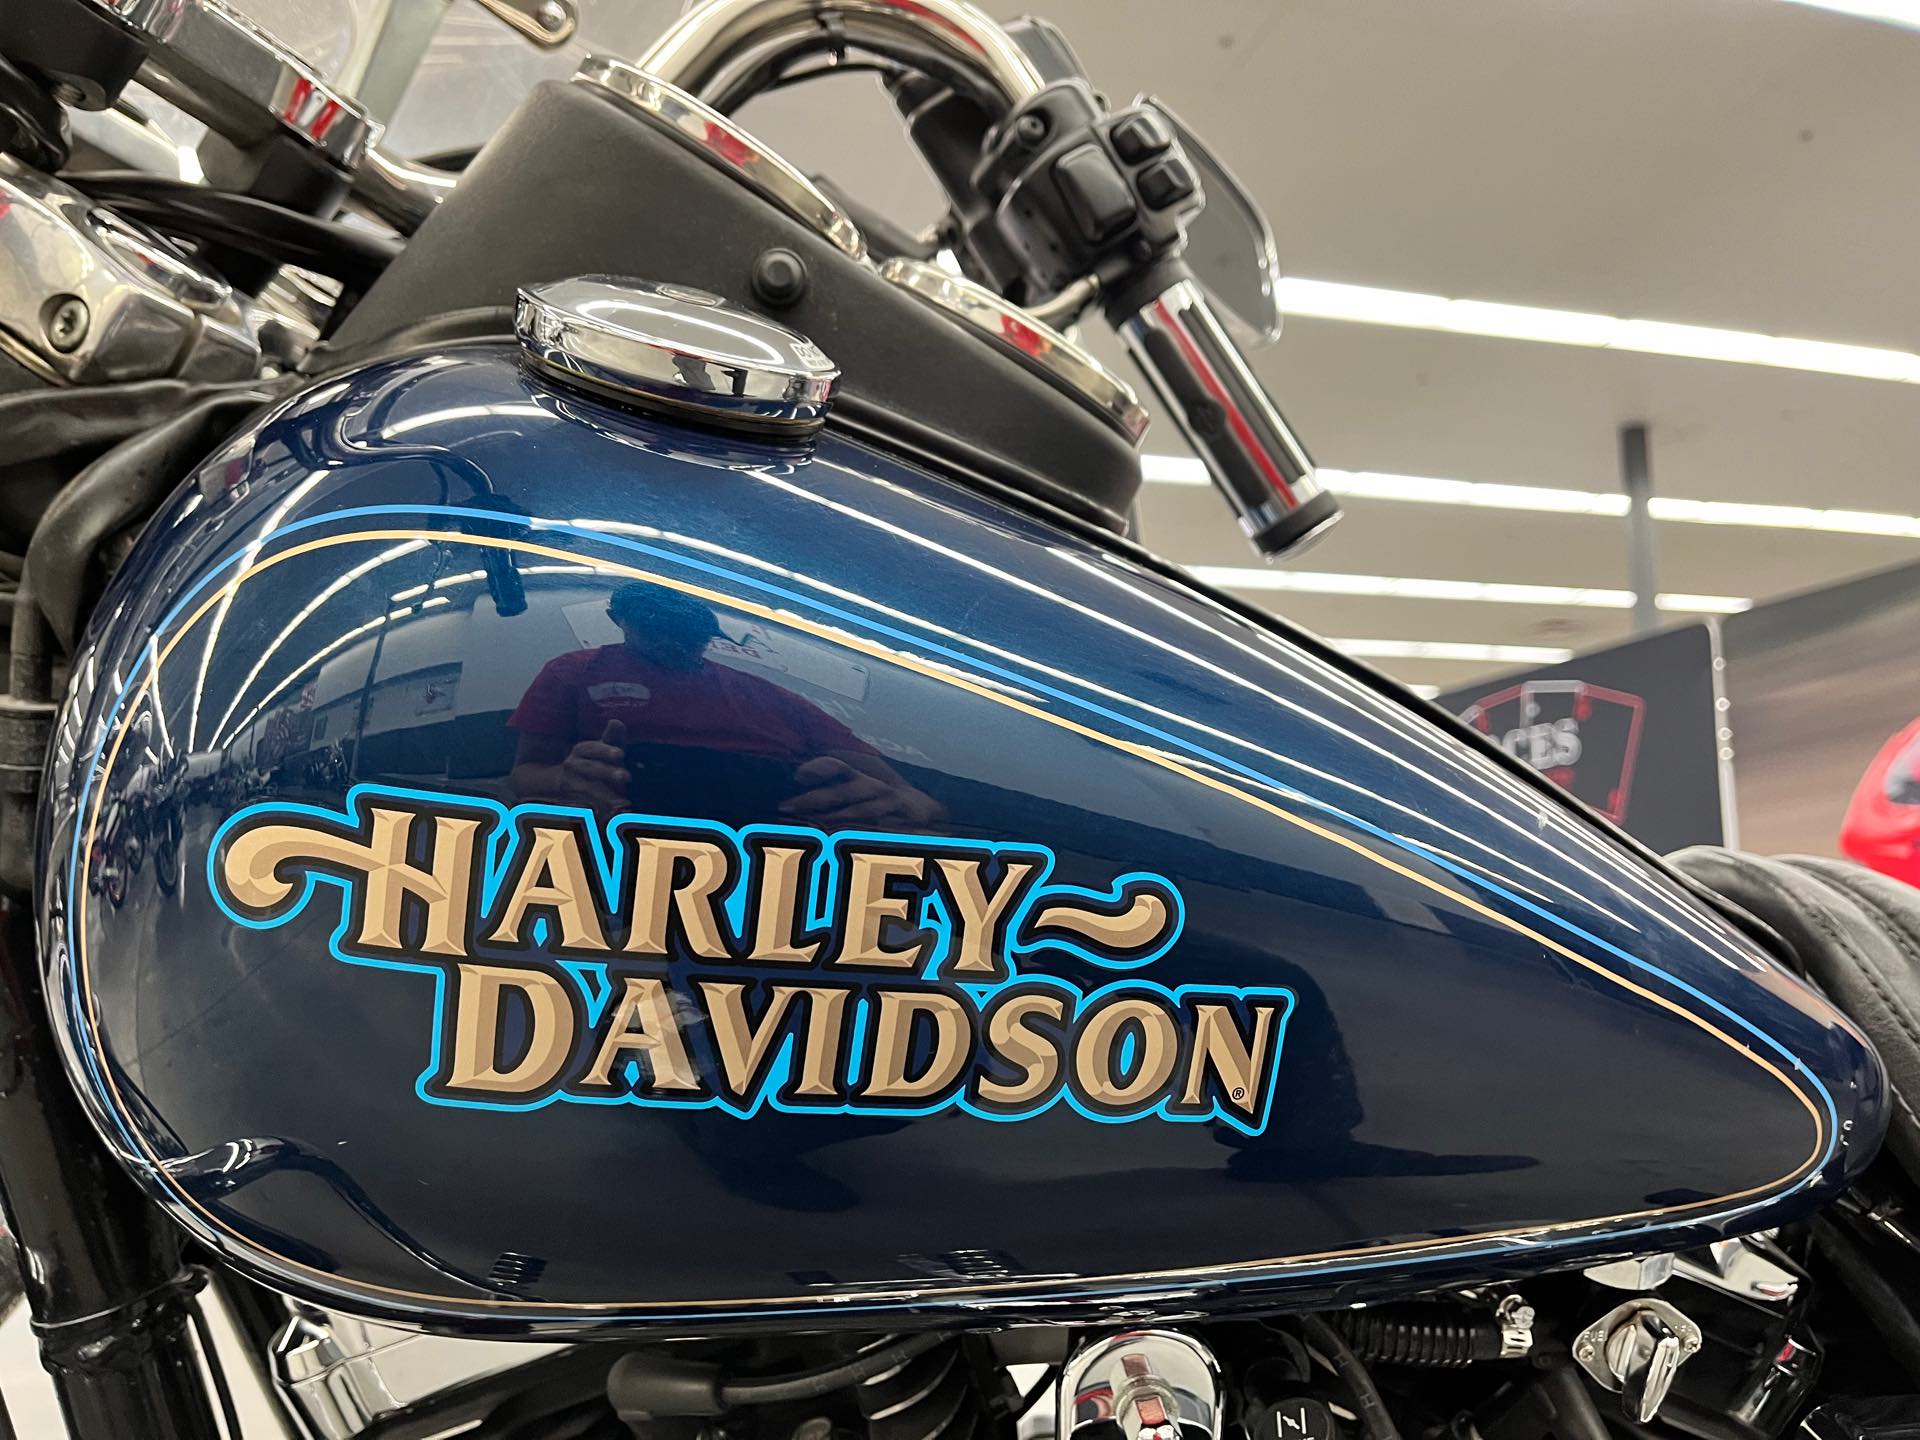 1998 Harley-Davidson FXLR at Aces Motorcycles - Denver